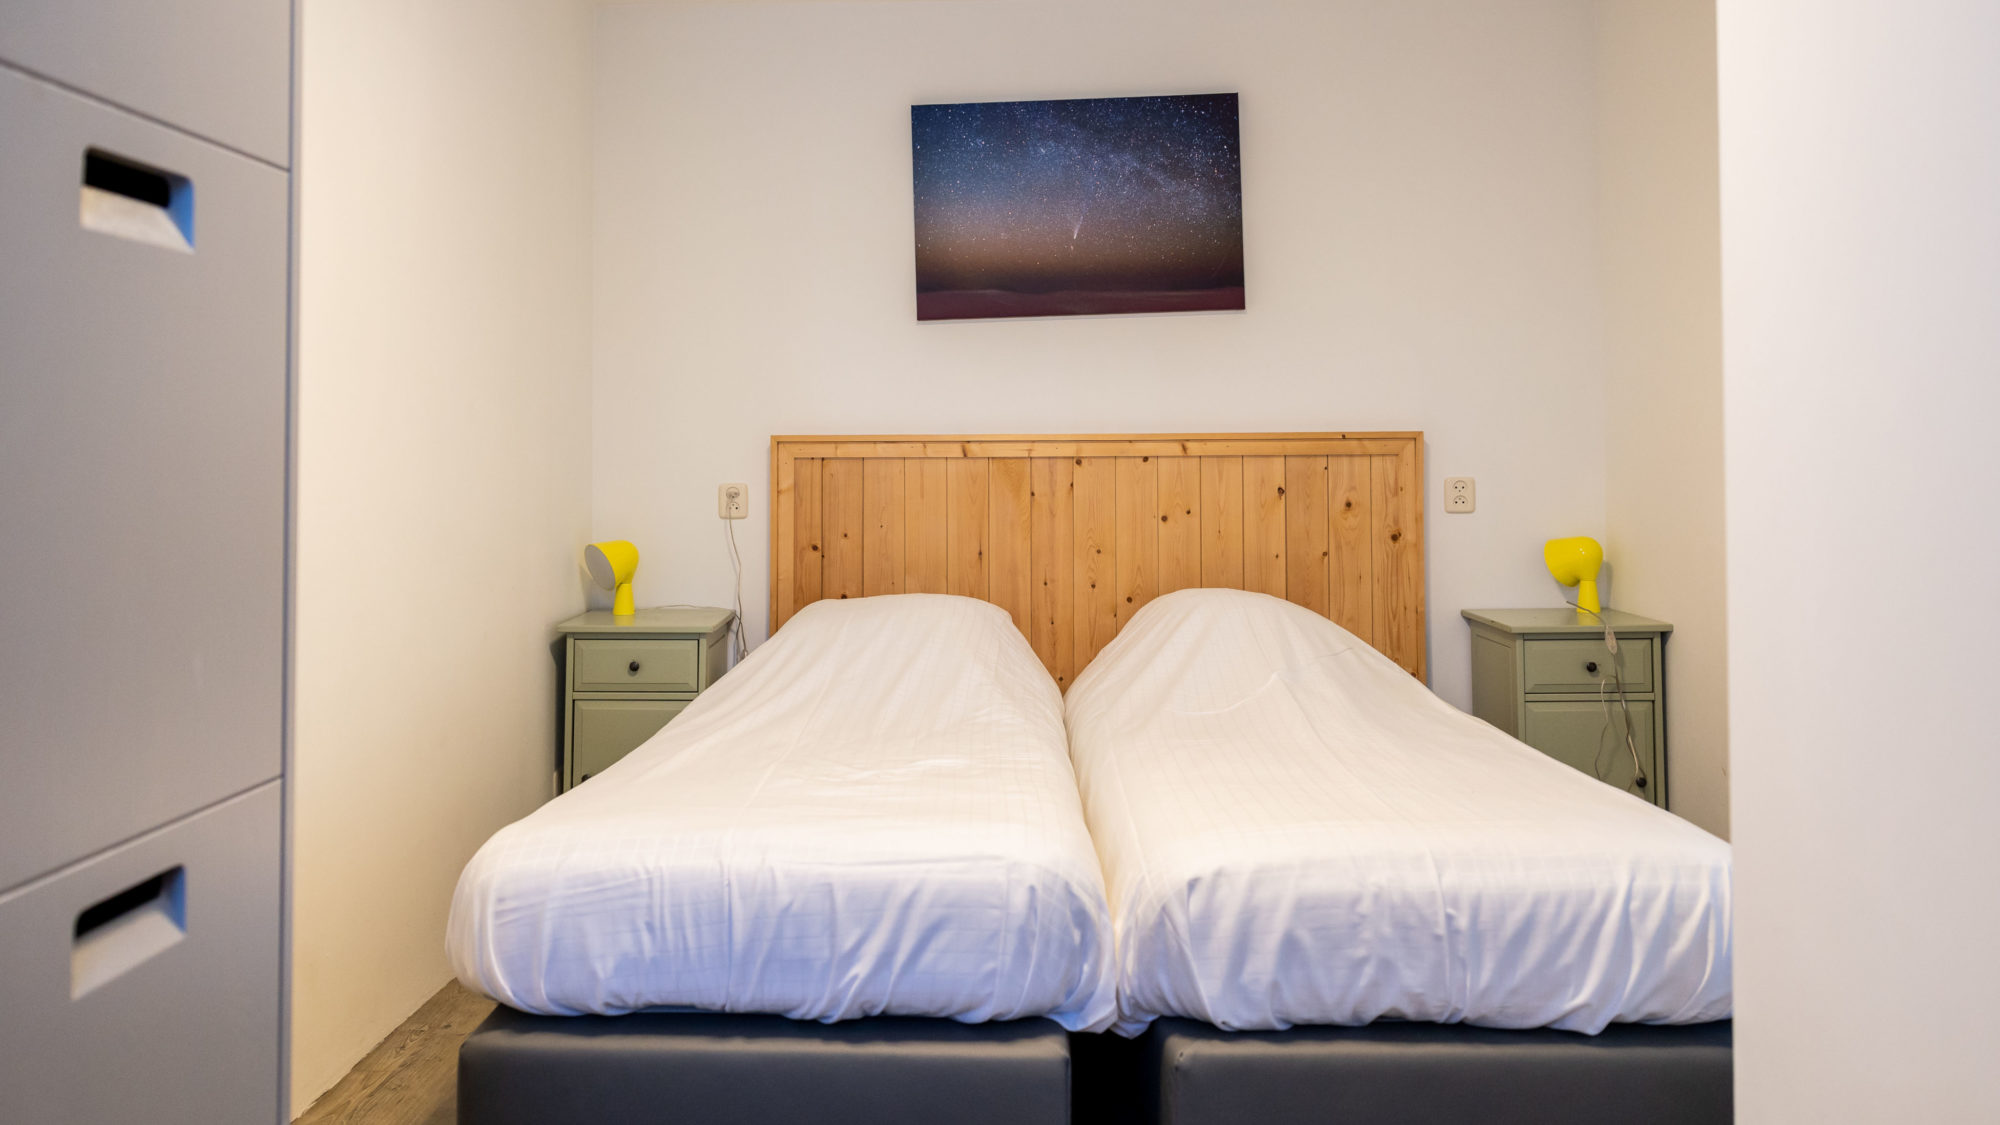 Dubbel eenpersoonsbed foto sterrenhemel Hotel appartement sauna Tjermelan Terschelling